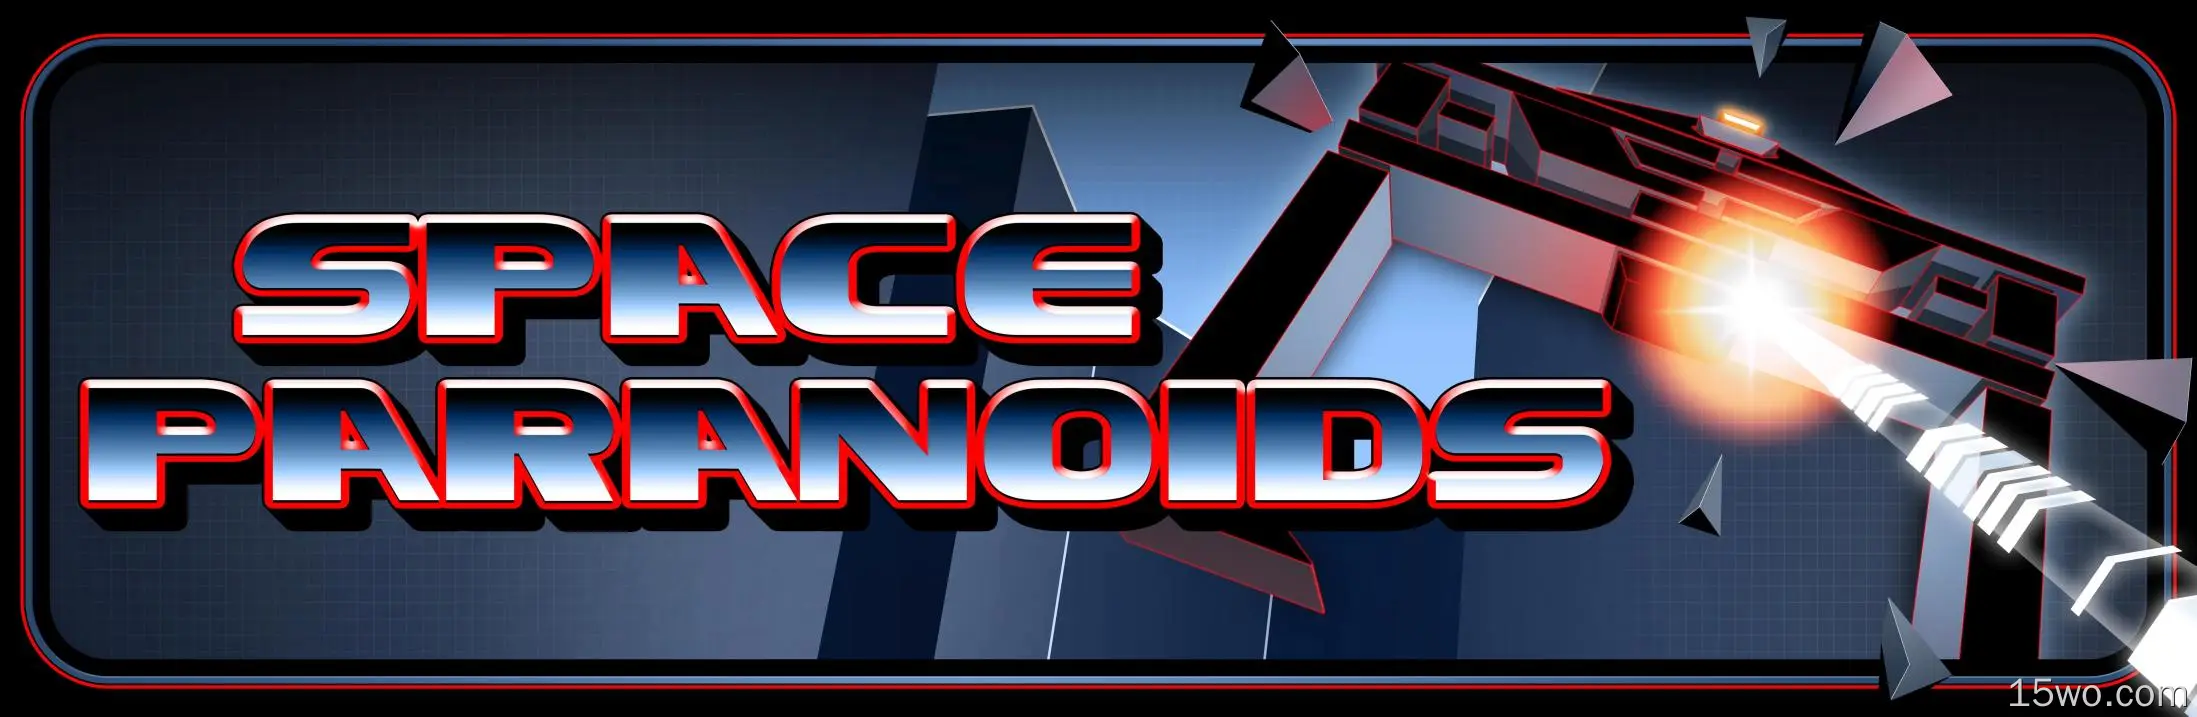 电子游戏 Space Paranoids 高清壁纸